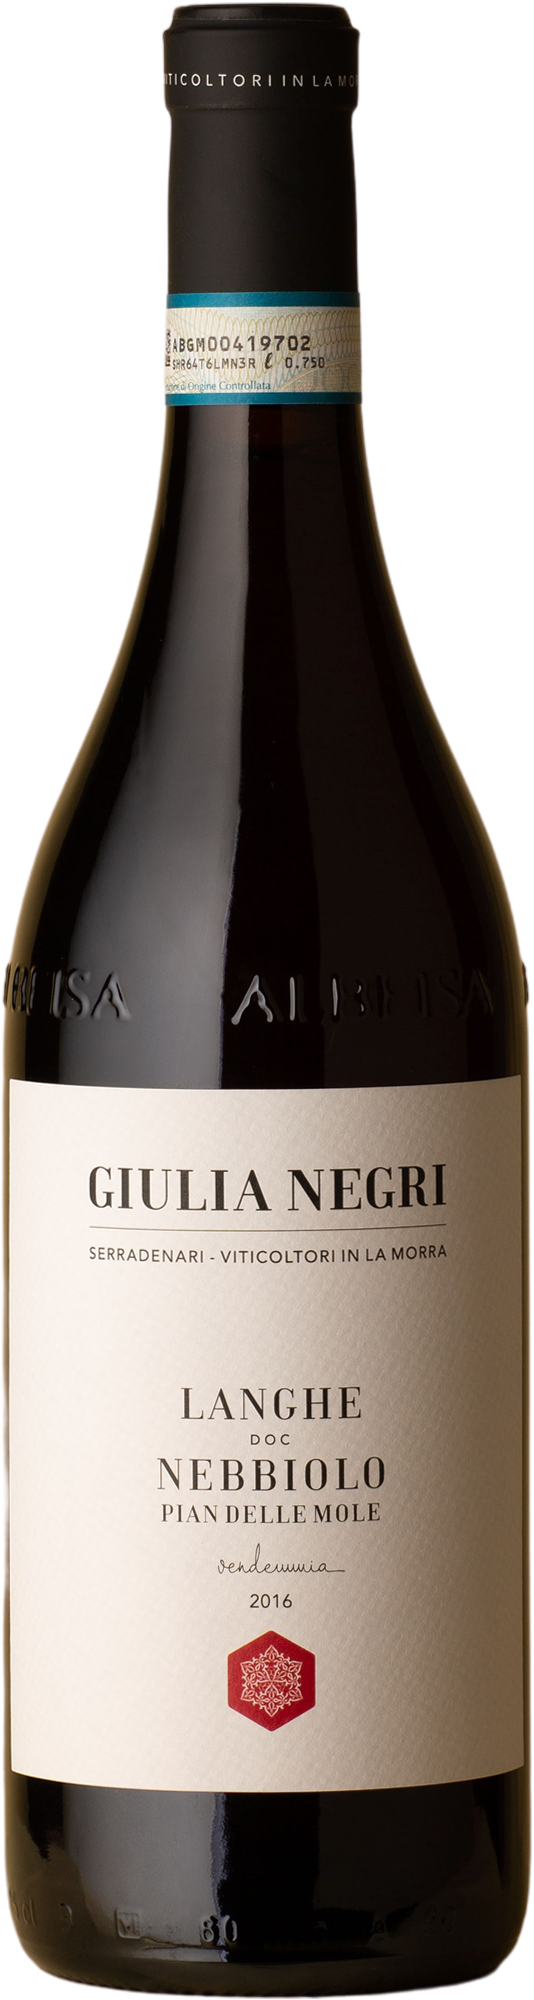 Giulia Negri - Pian Delle Mole Nebbiolo 2016 Red Wine